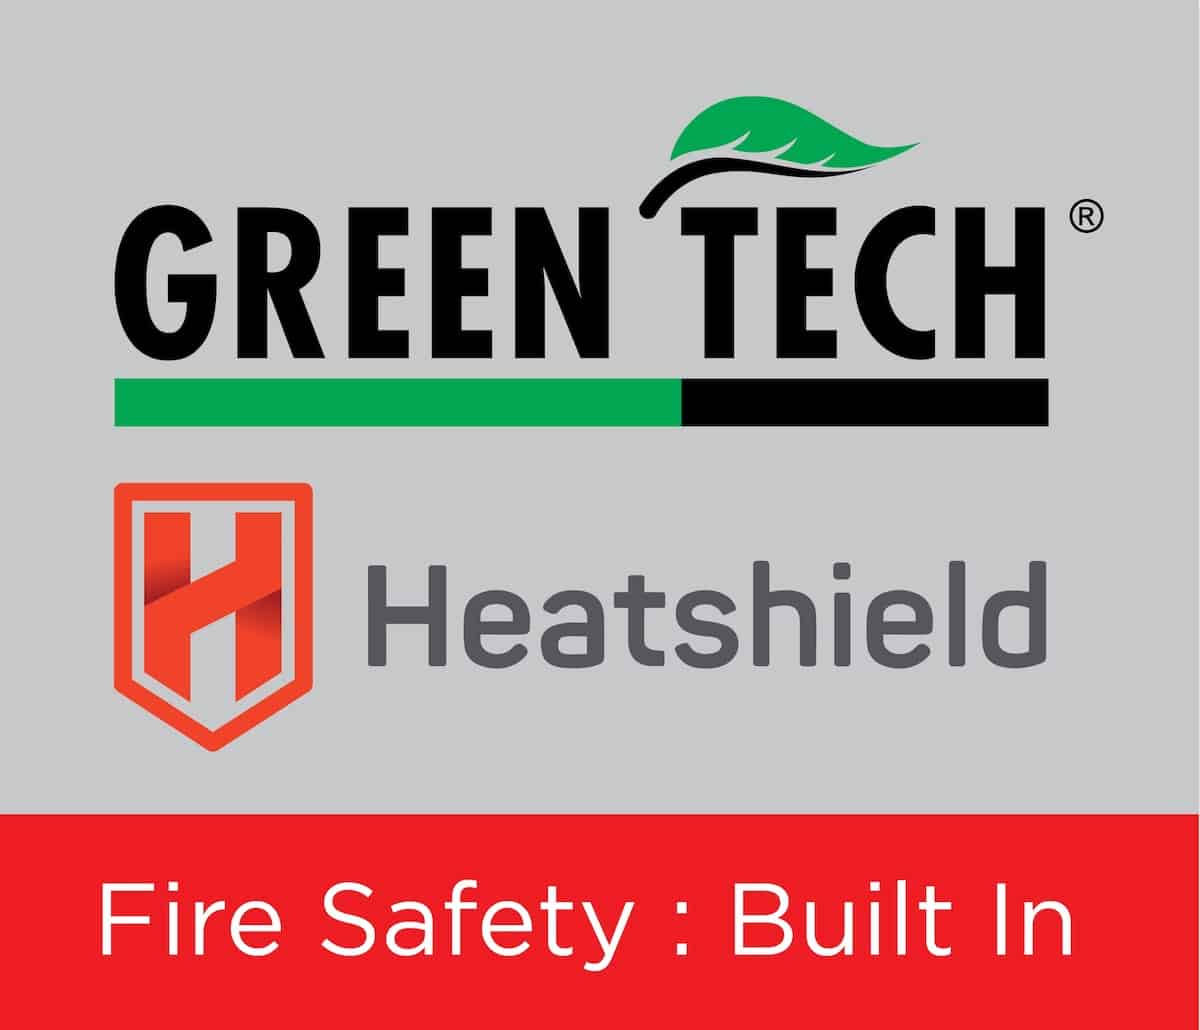 Greentech Heatshield